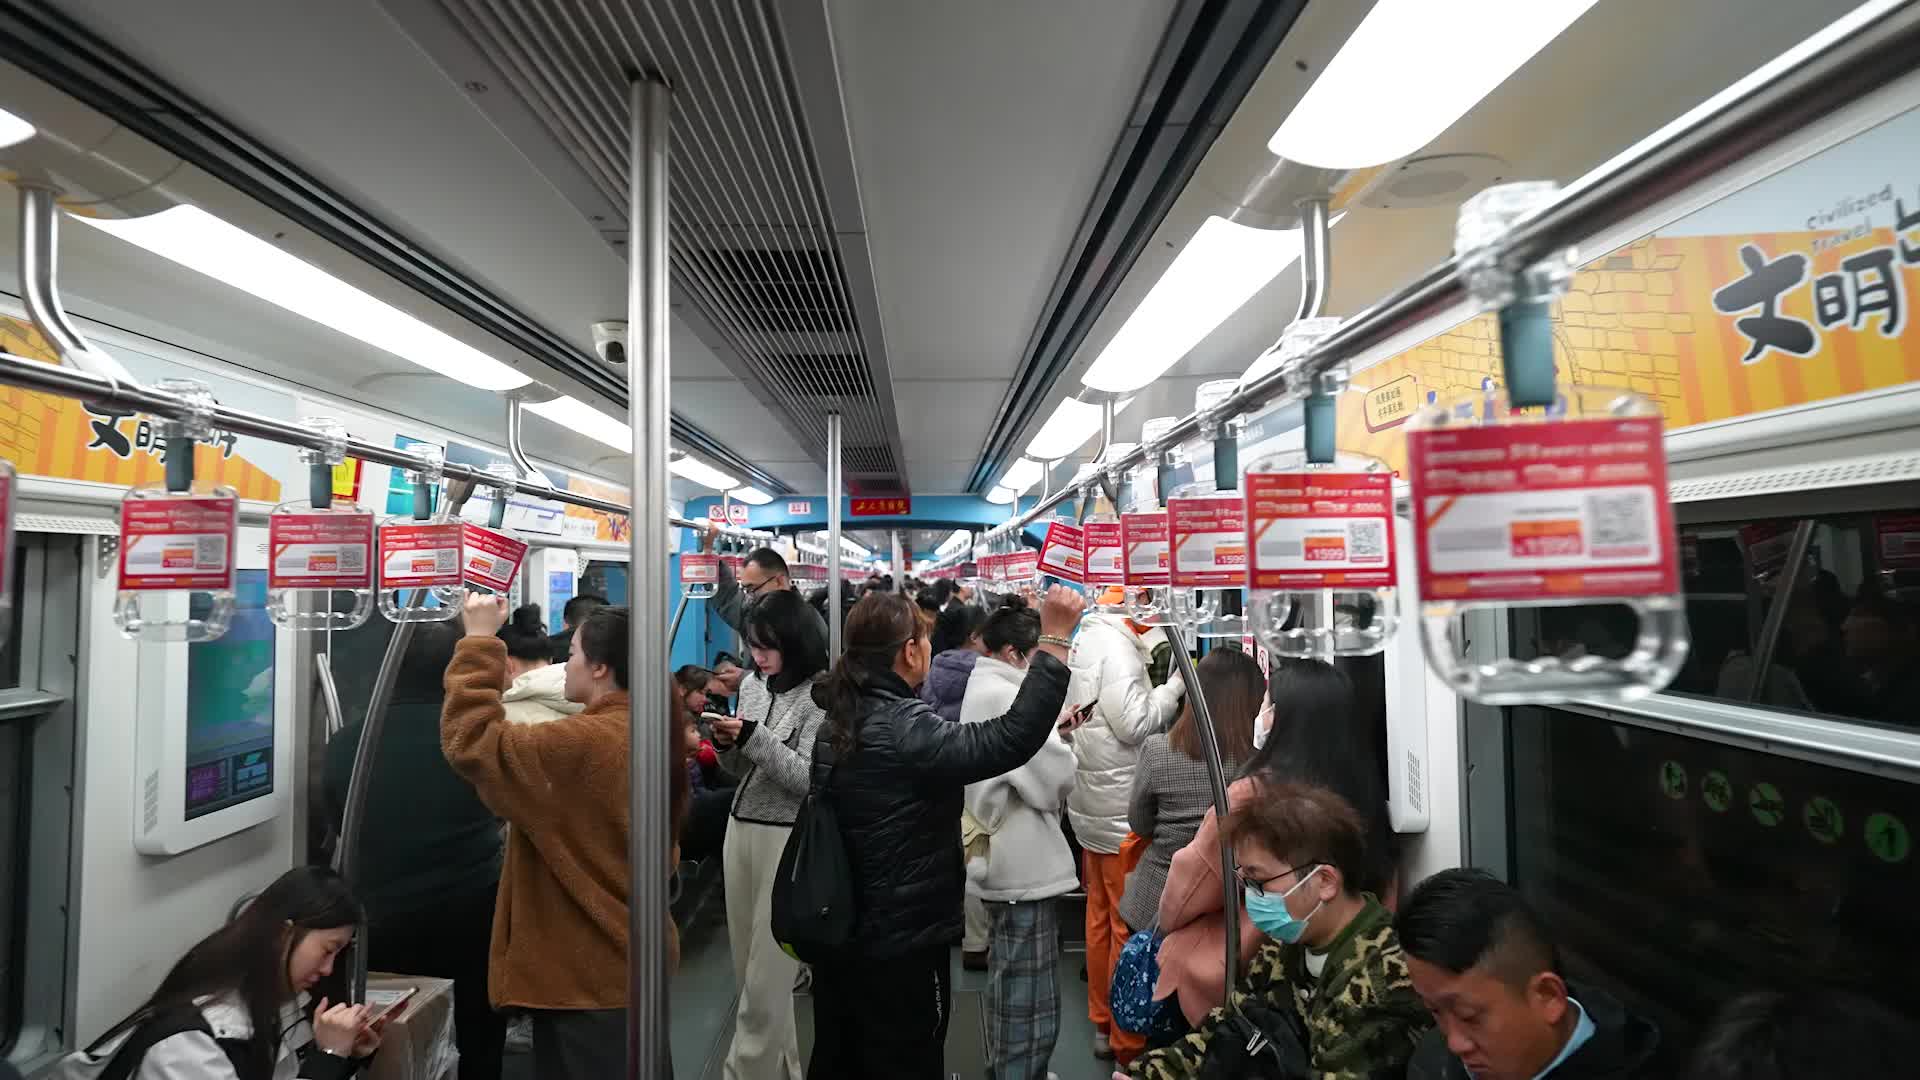 地铁拉手广告媒体-京东案例展示